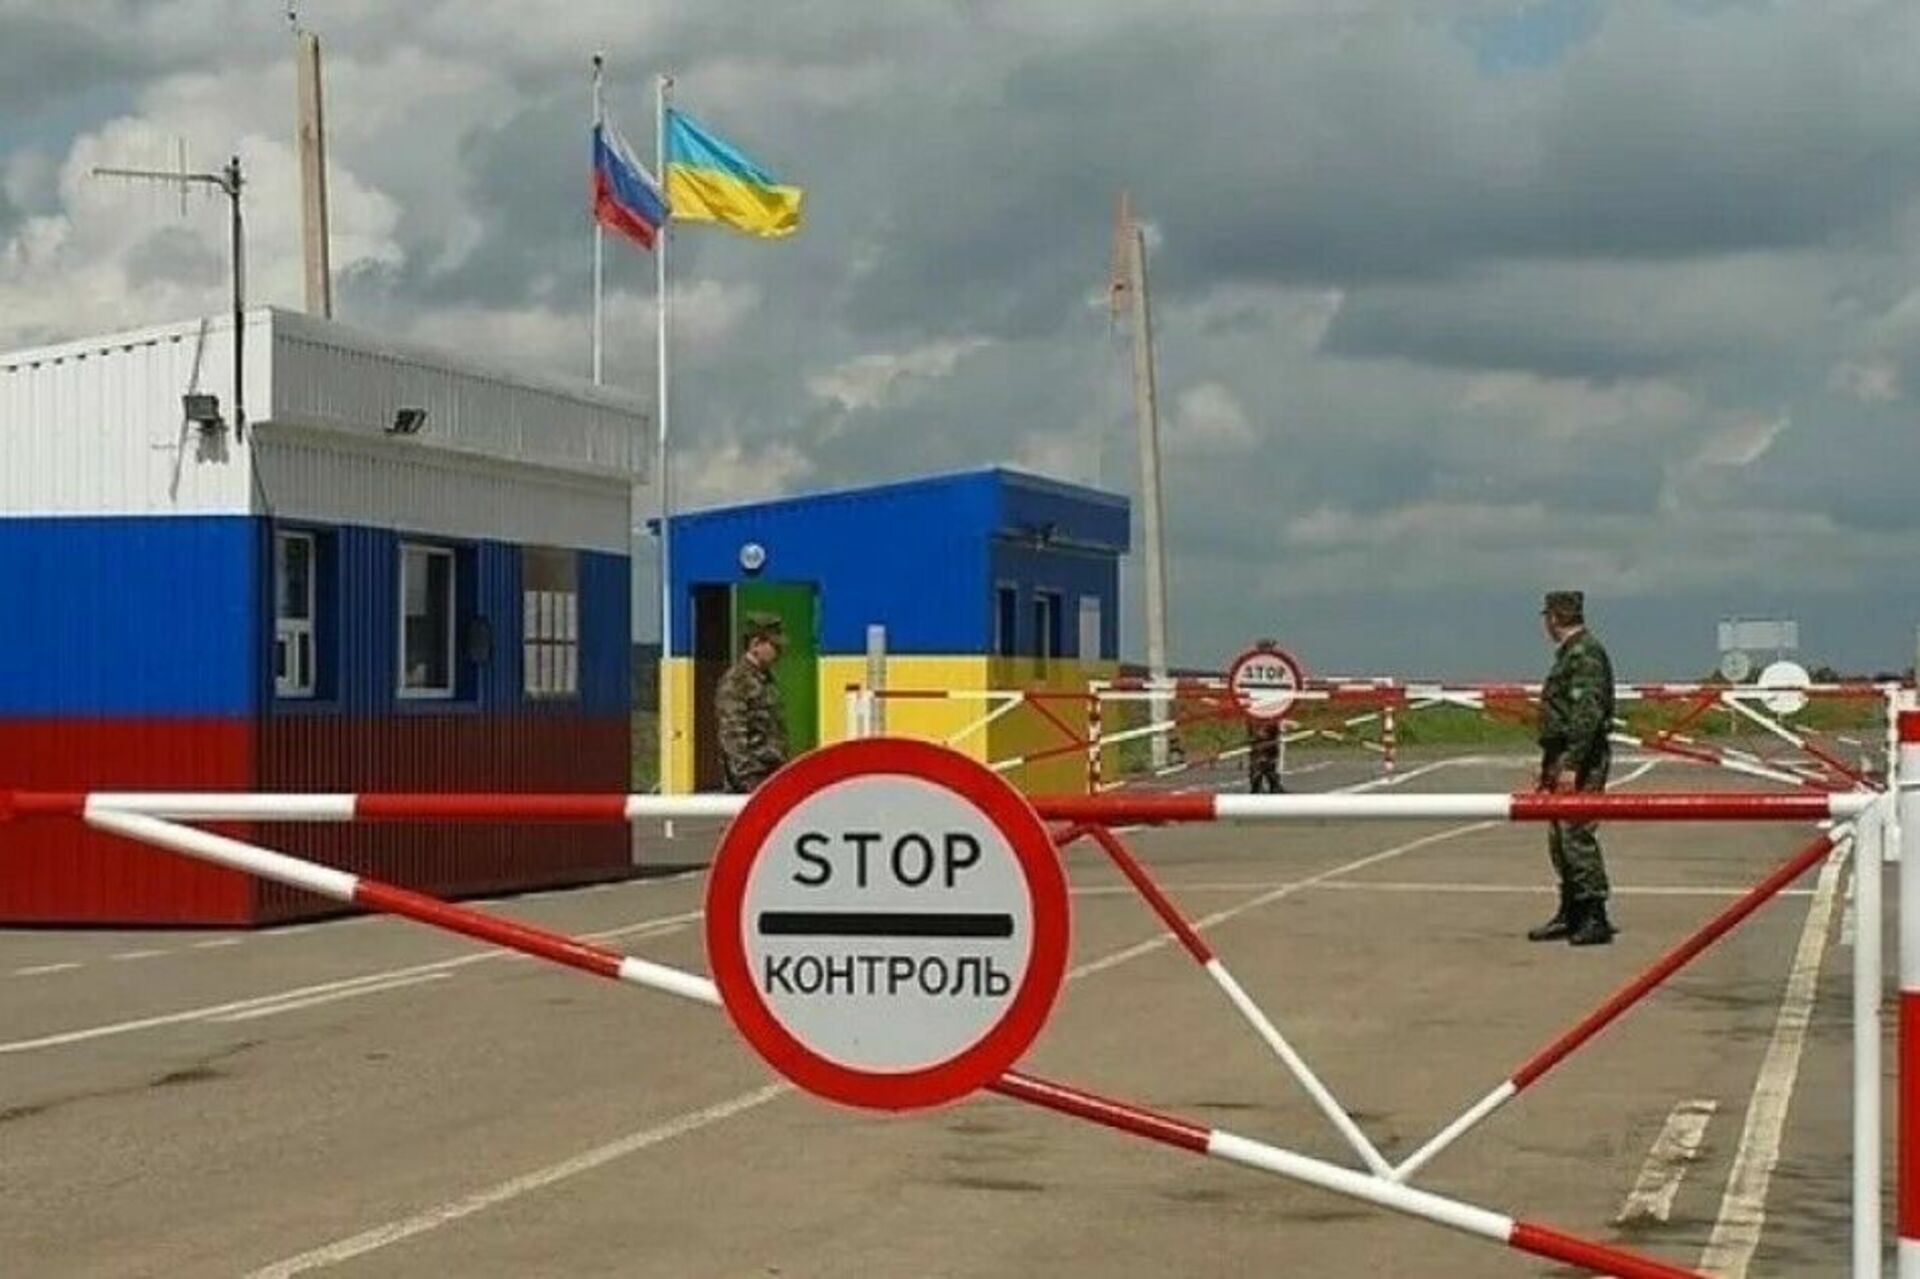 Когда откроют границу с украиной